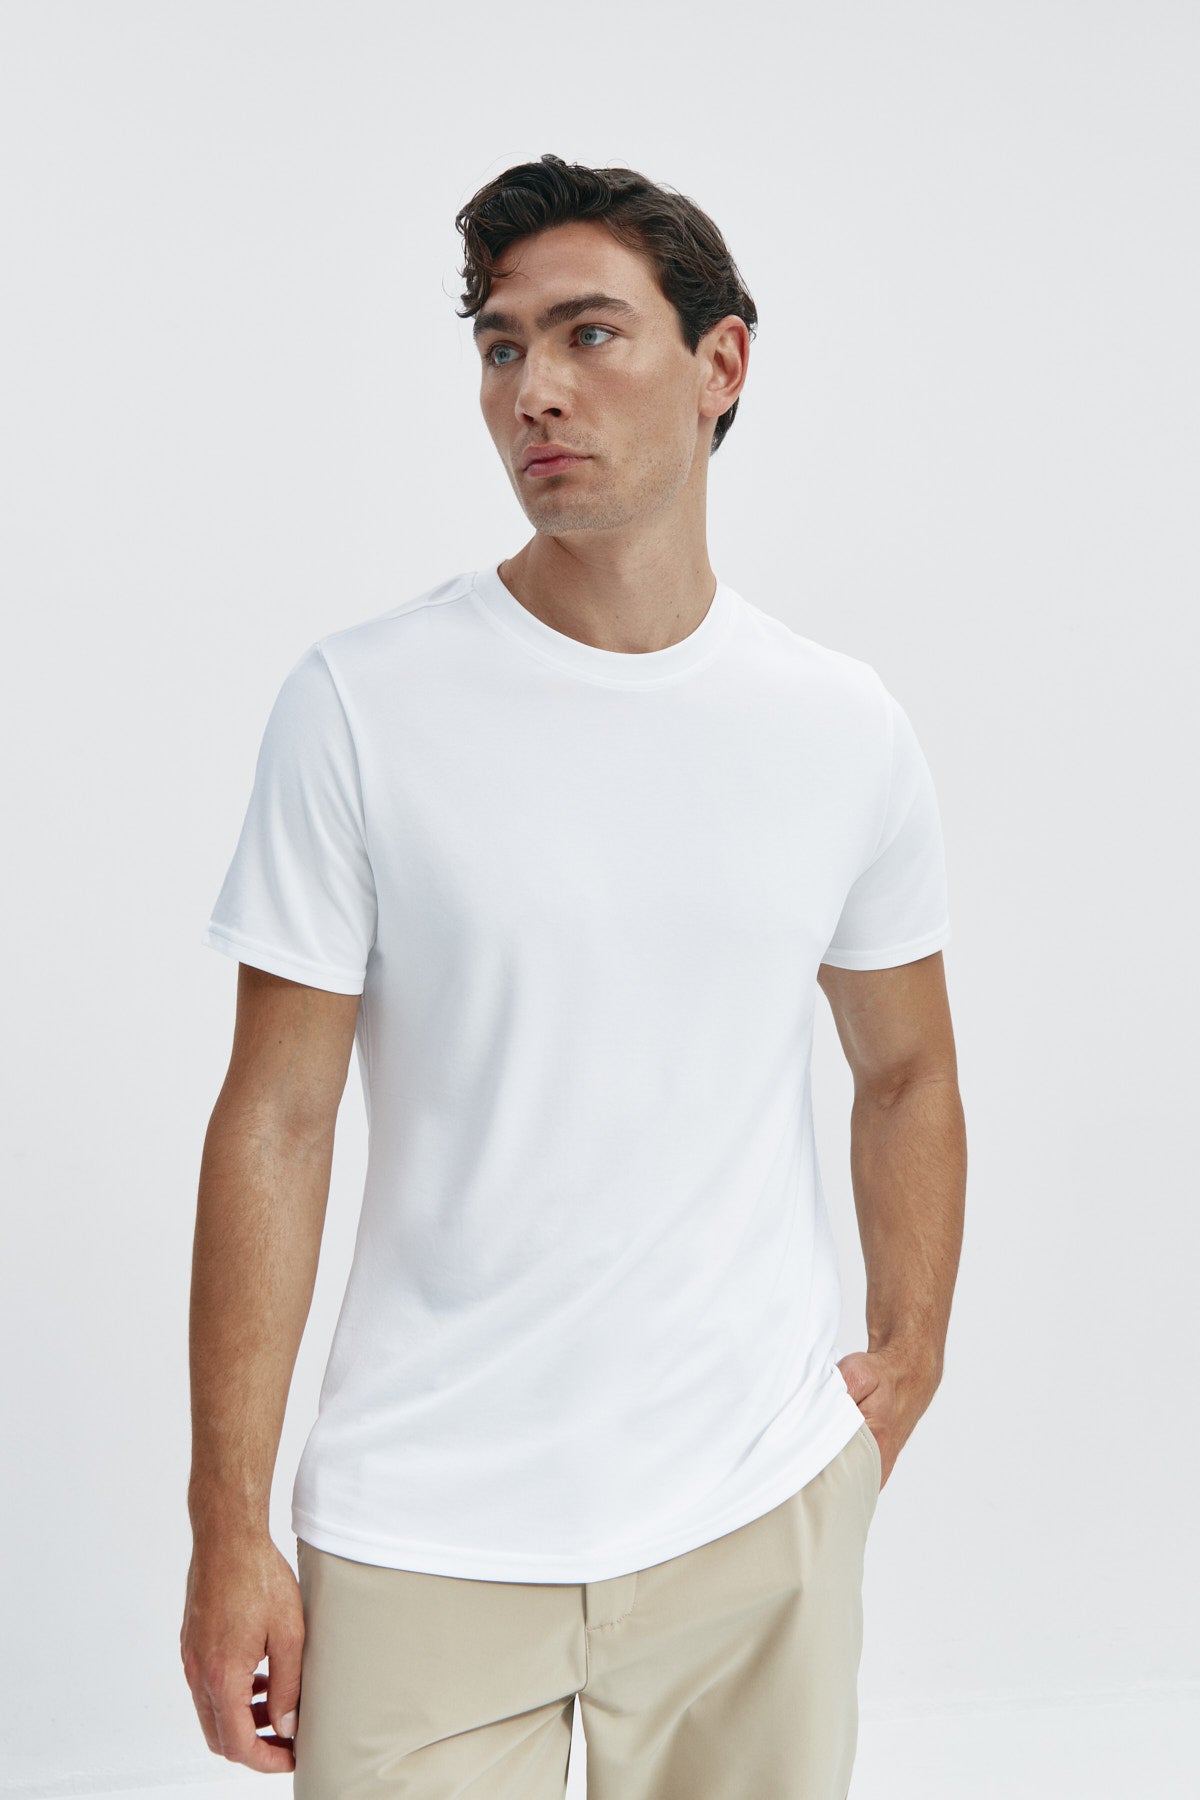 Camiseta de hombre estampada de rayas marino: Camiseta de hombre de rayas marino de manga corta, antiarrugas y antimanchas. Foto de frente.